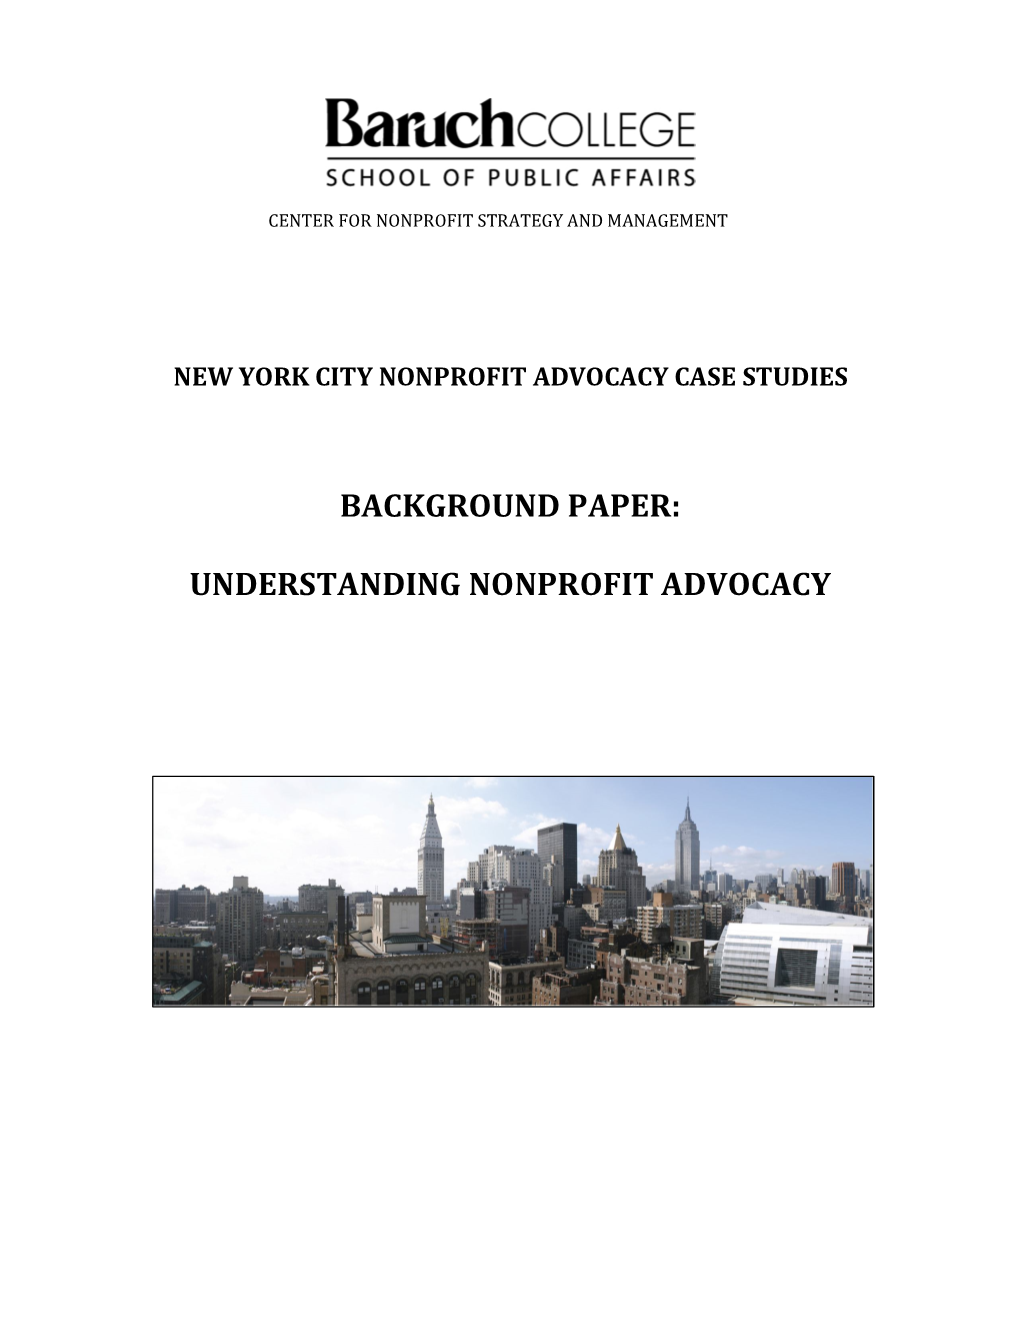 New York City Nonprofit Advocacy Case Studies